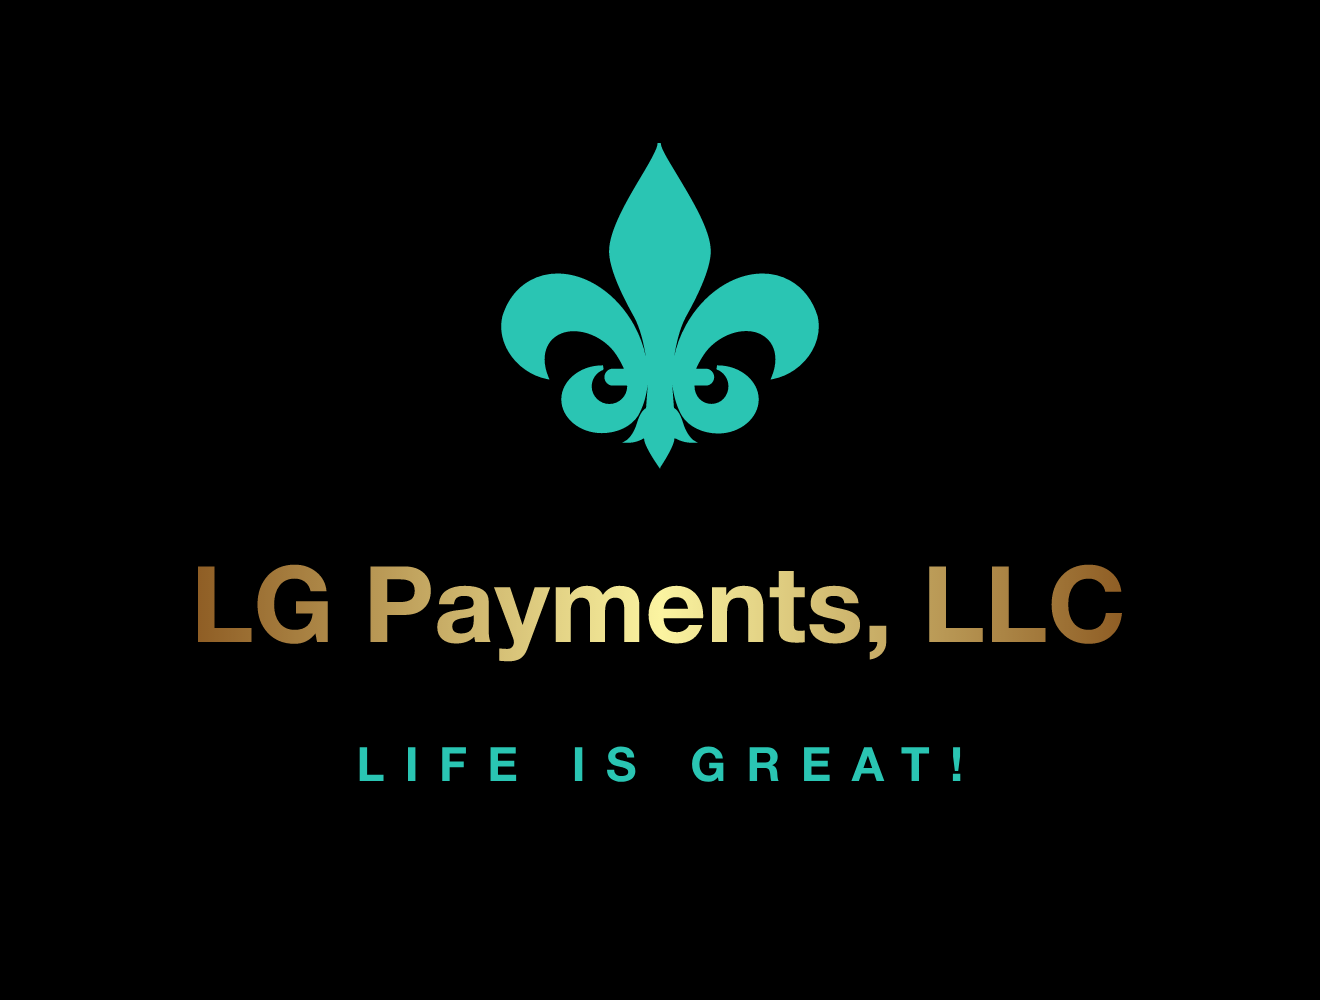 LG Payments, LLC